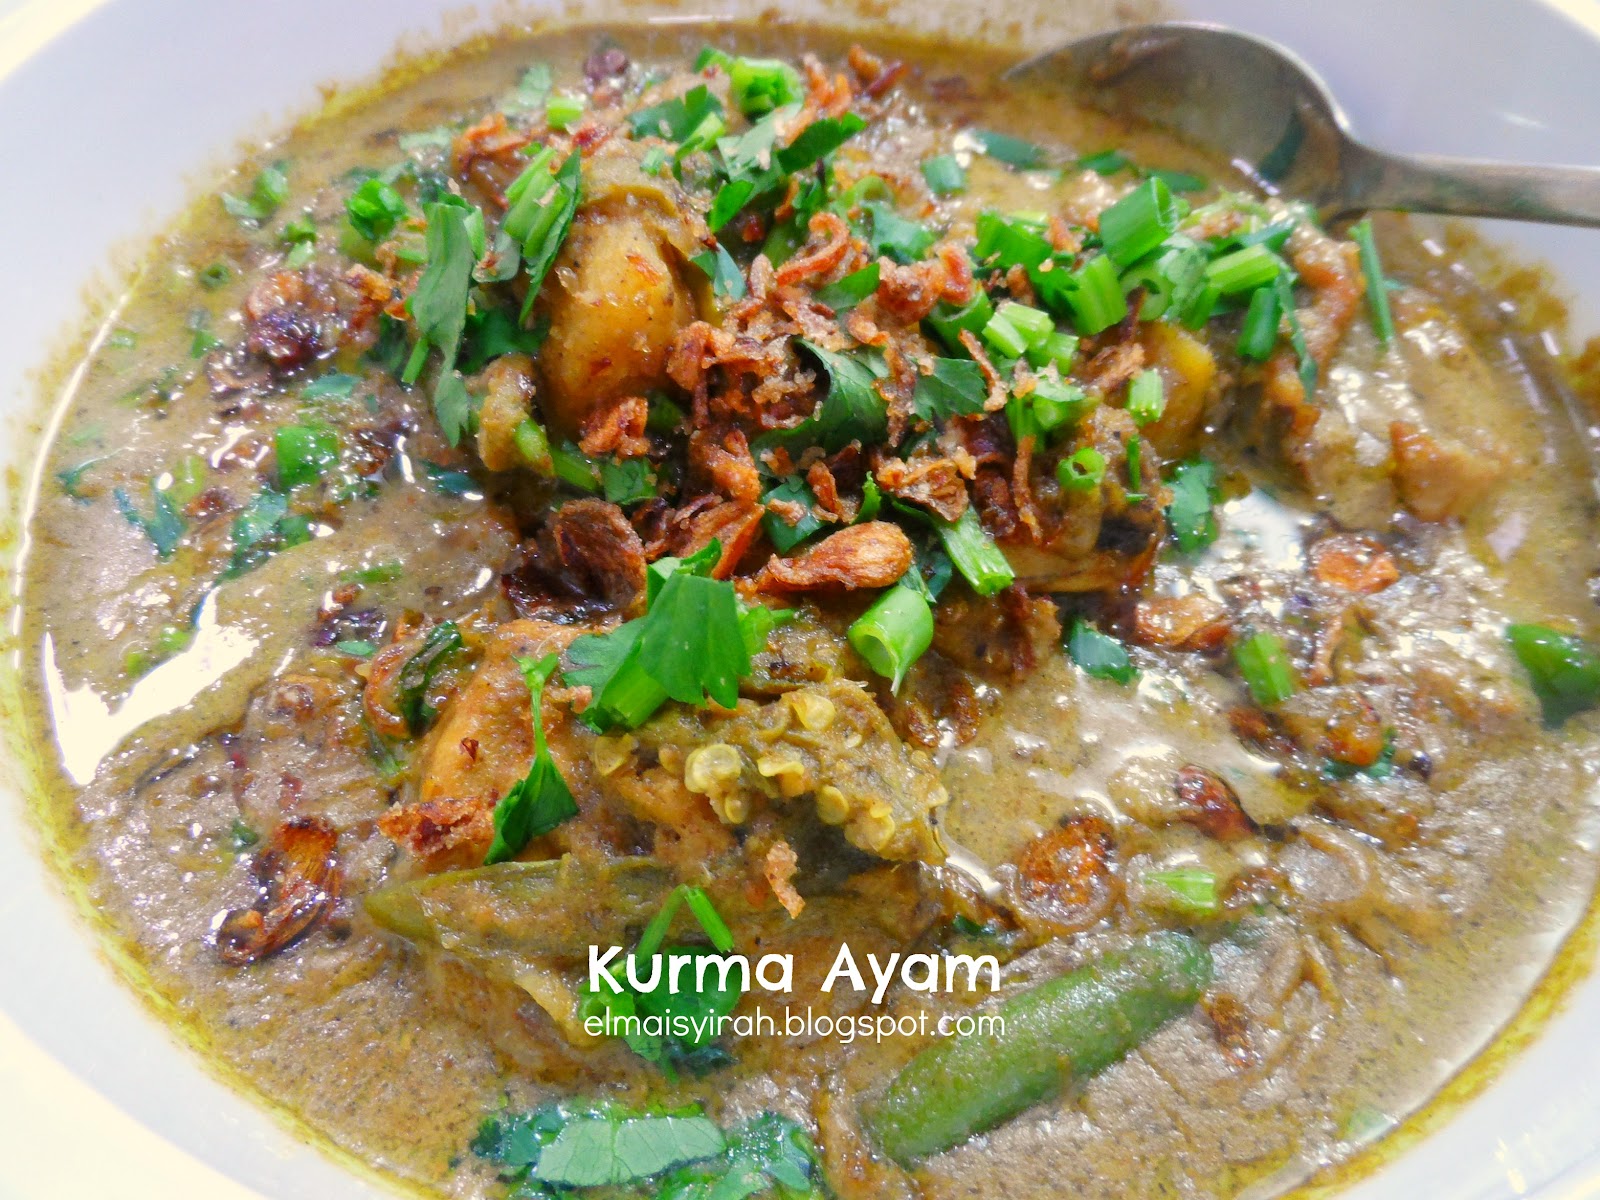 A Simple Life: Resepi Kurma Ayam / Daging Sedap